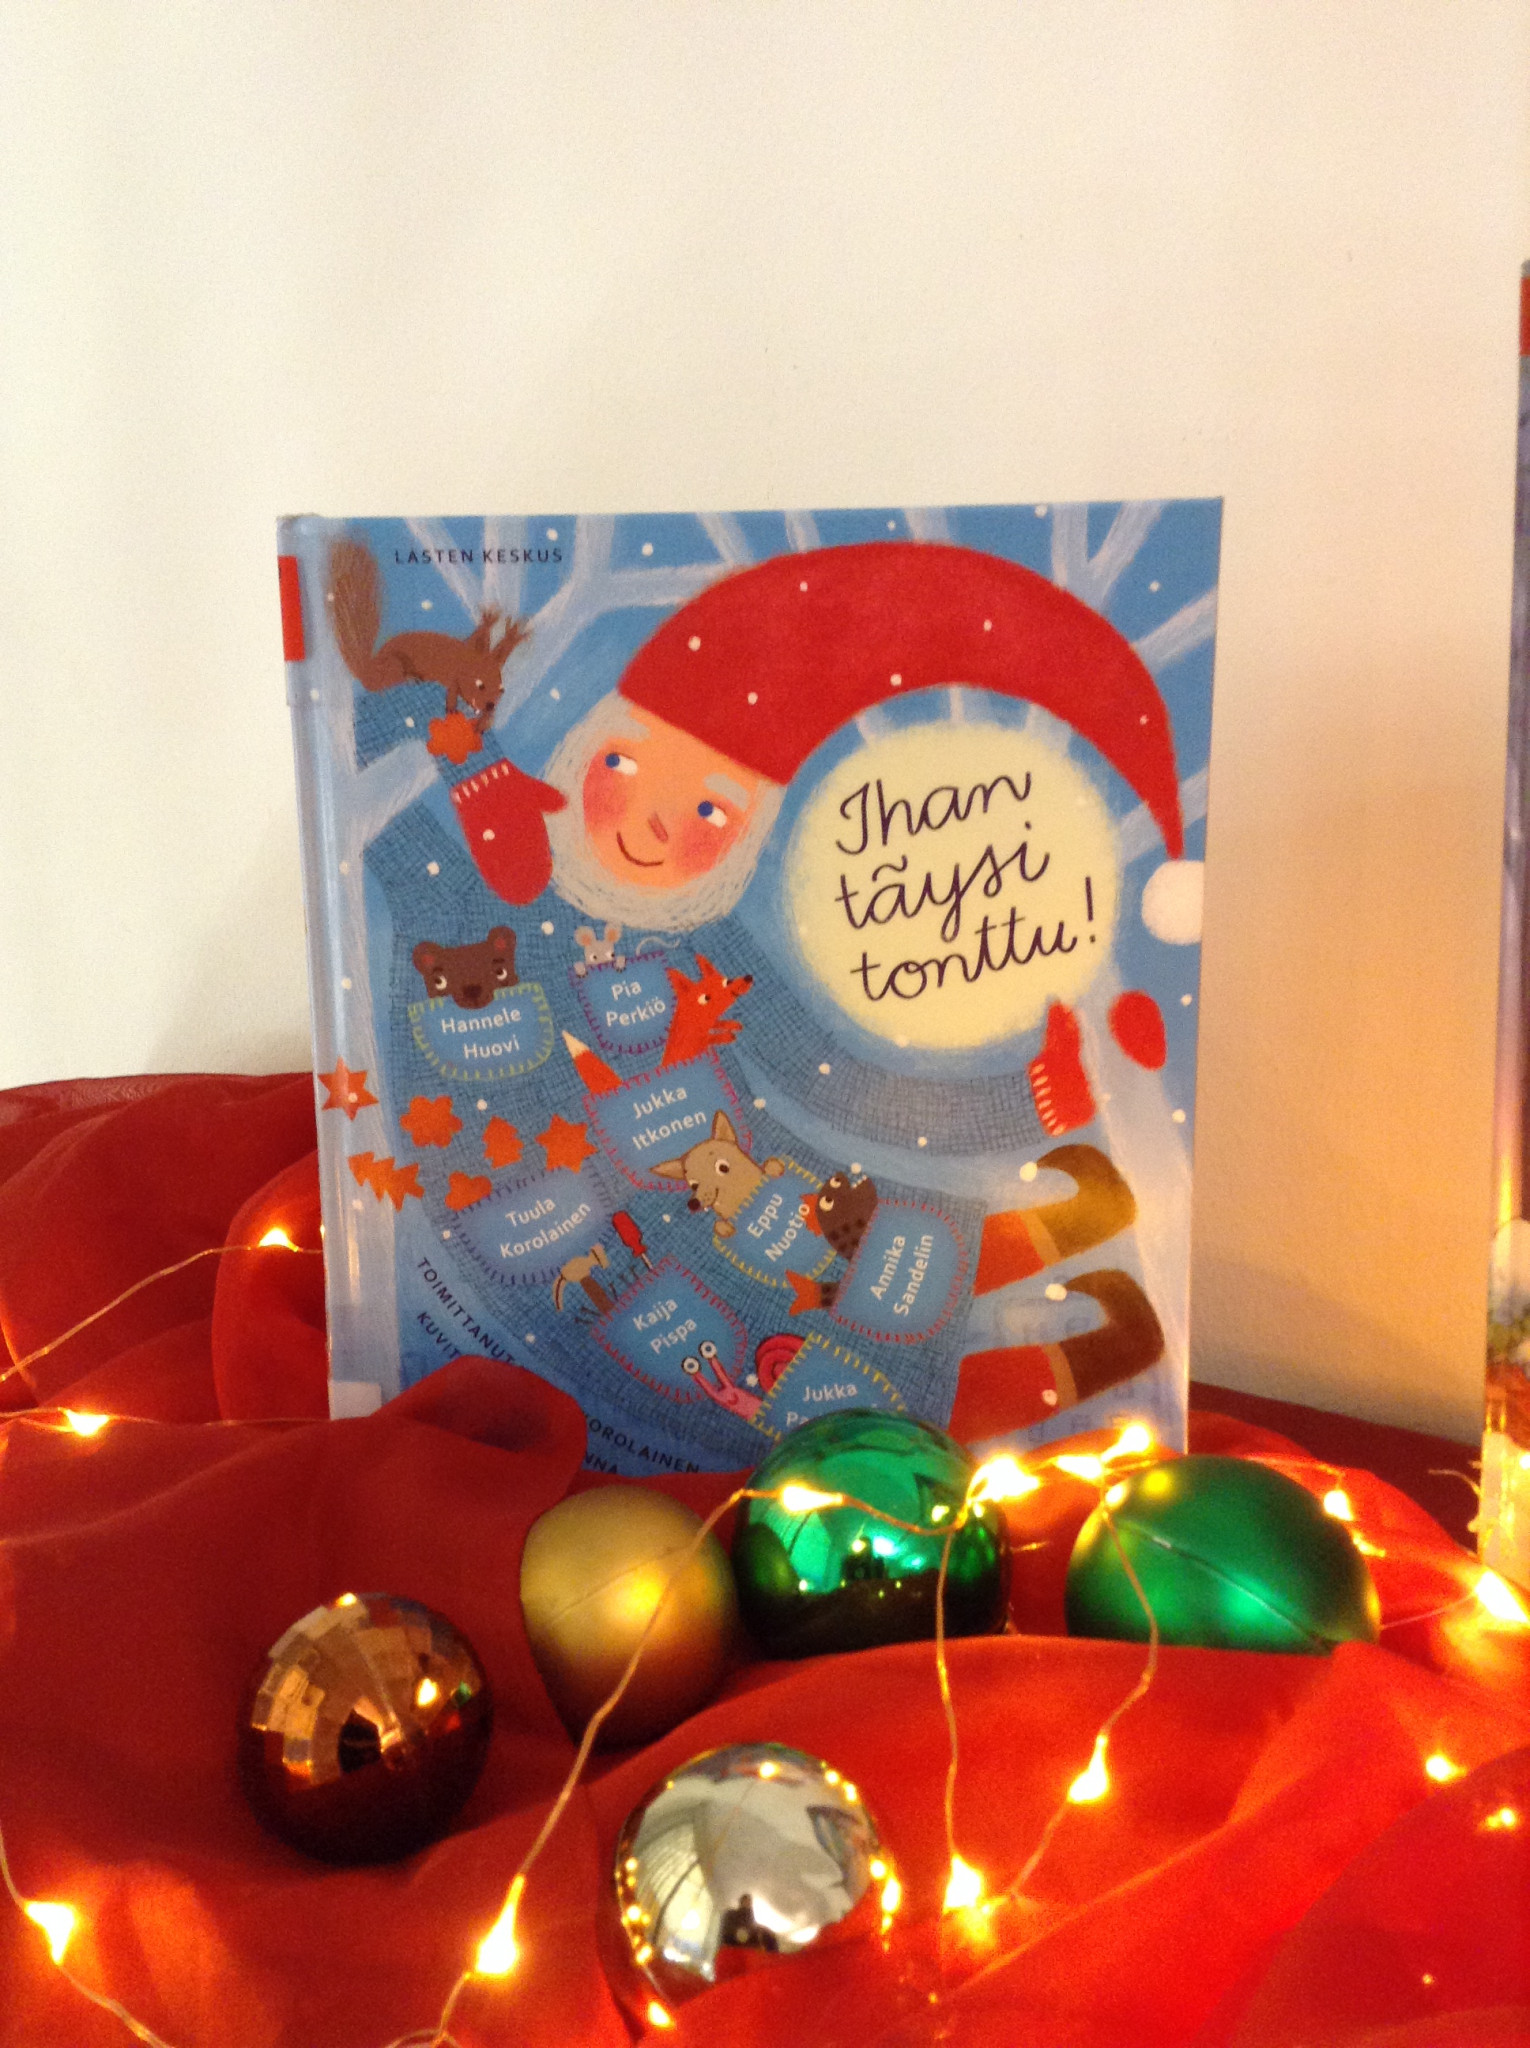 Jouluinen asetelma, jossa lasten joulukirja nojaa seinään punaisen kankaan päällä. Kirjan kannessa on iloisen näköinen tonttu. Kirjan edessä on joulupalloja ja jouluvalosarja.